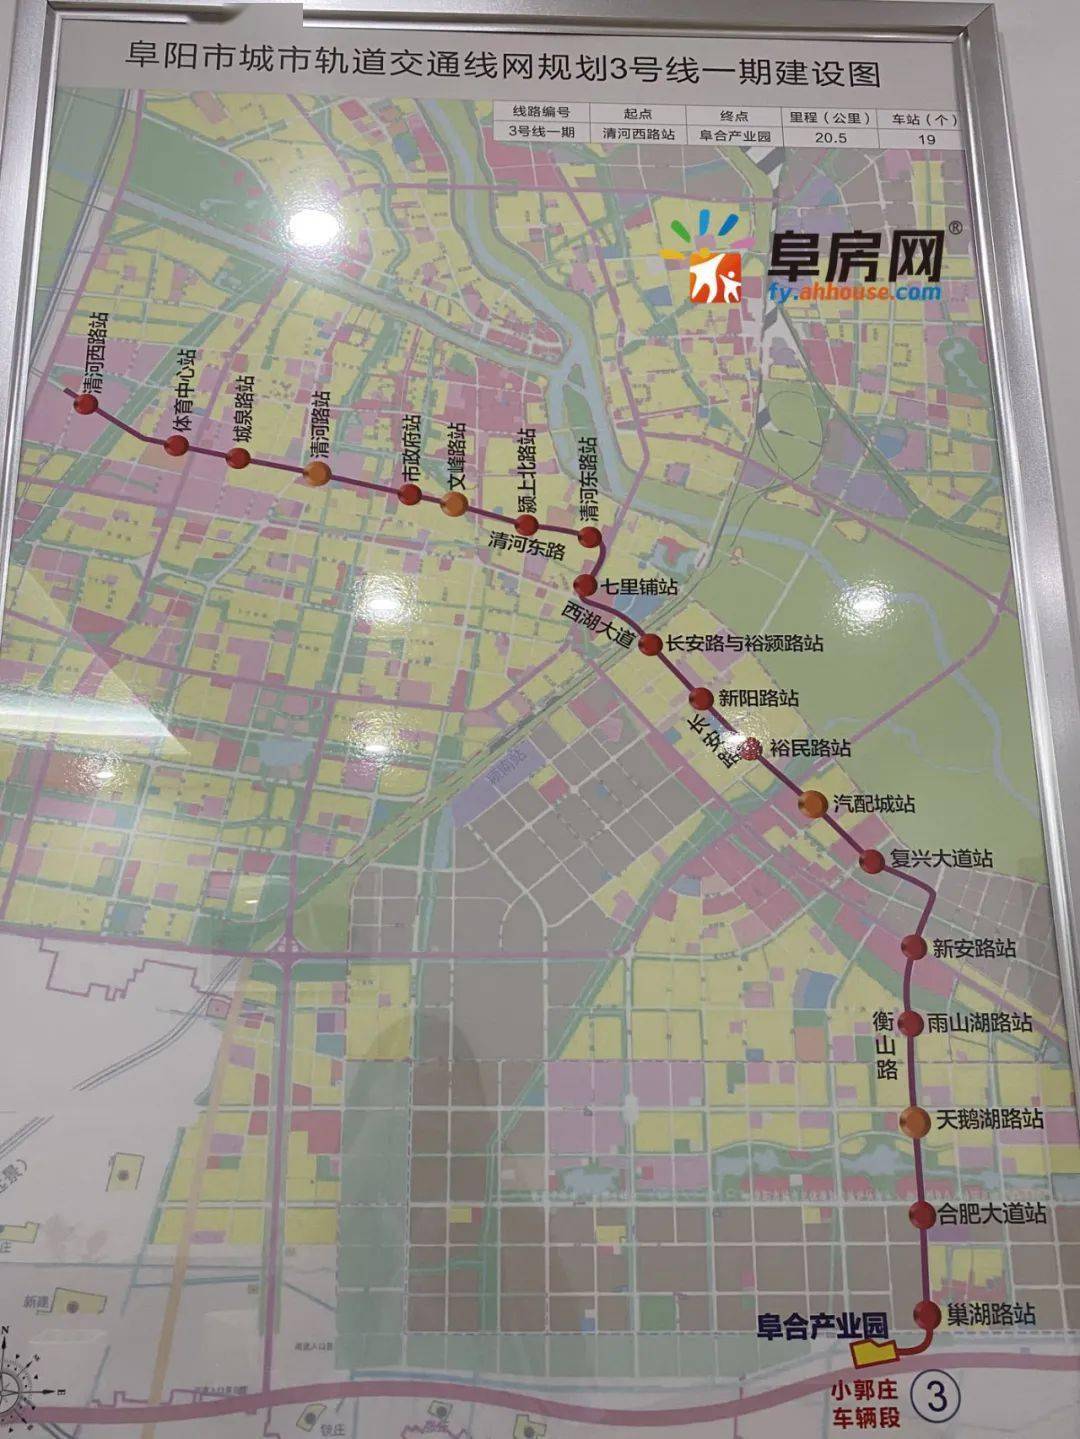 阜阳轨道交通线网规划公示!规划5条线路,128个站点!1